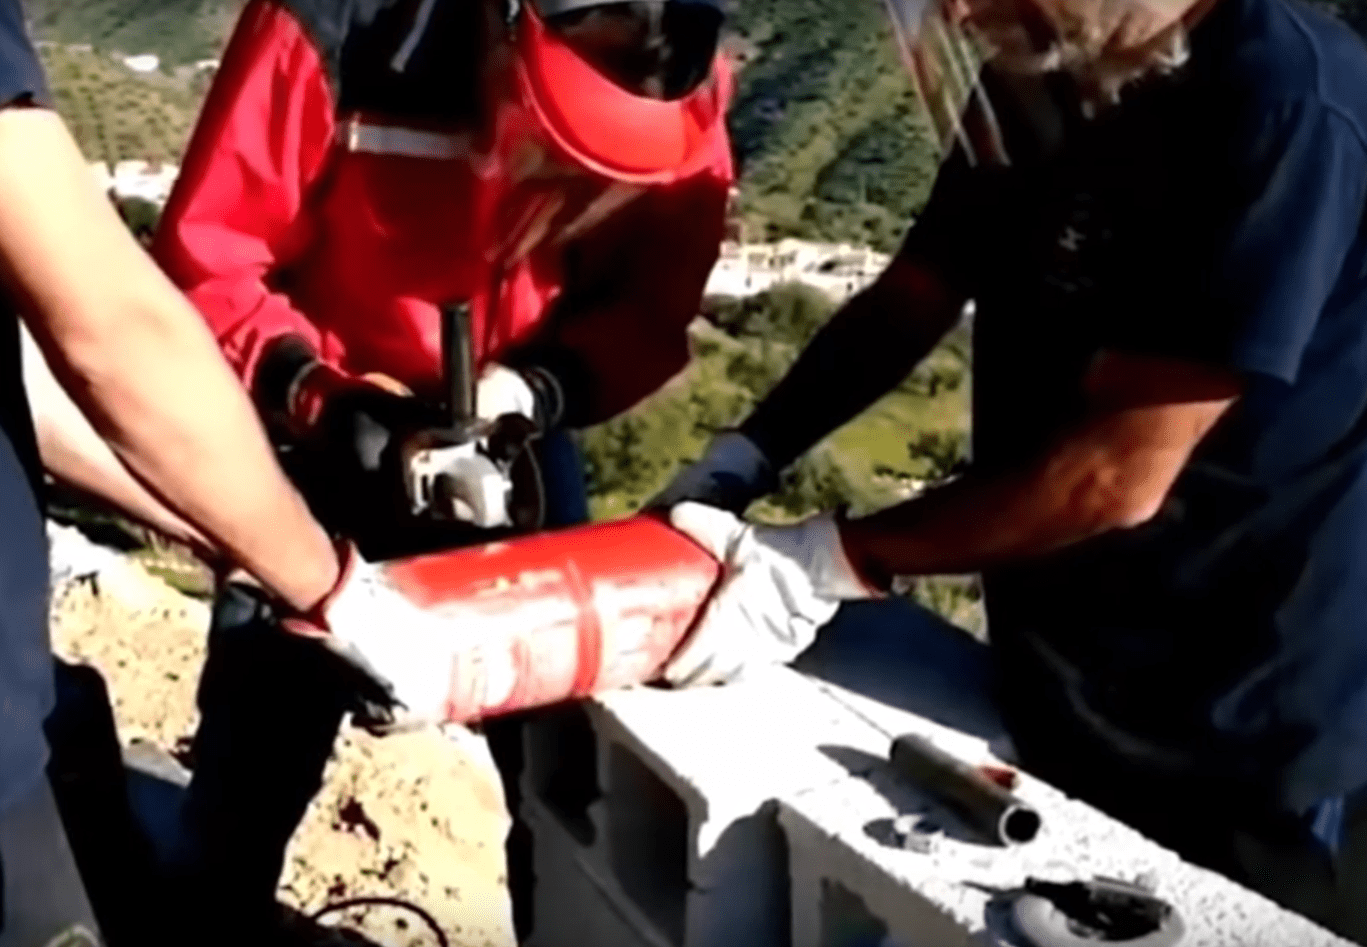 Rescatistas realizando trabajos para sacar a Julen del pozo en Totalán, España. | Imagen: YouTube/Videos Virales